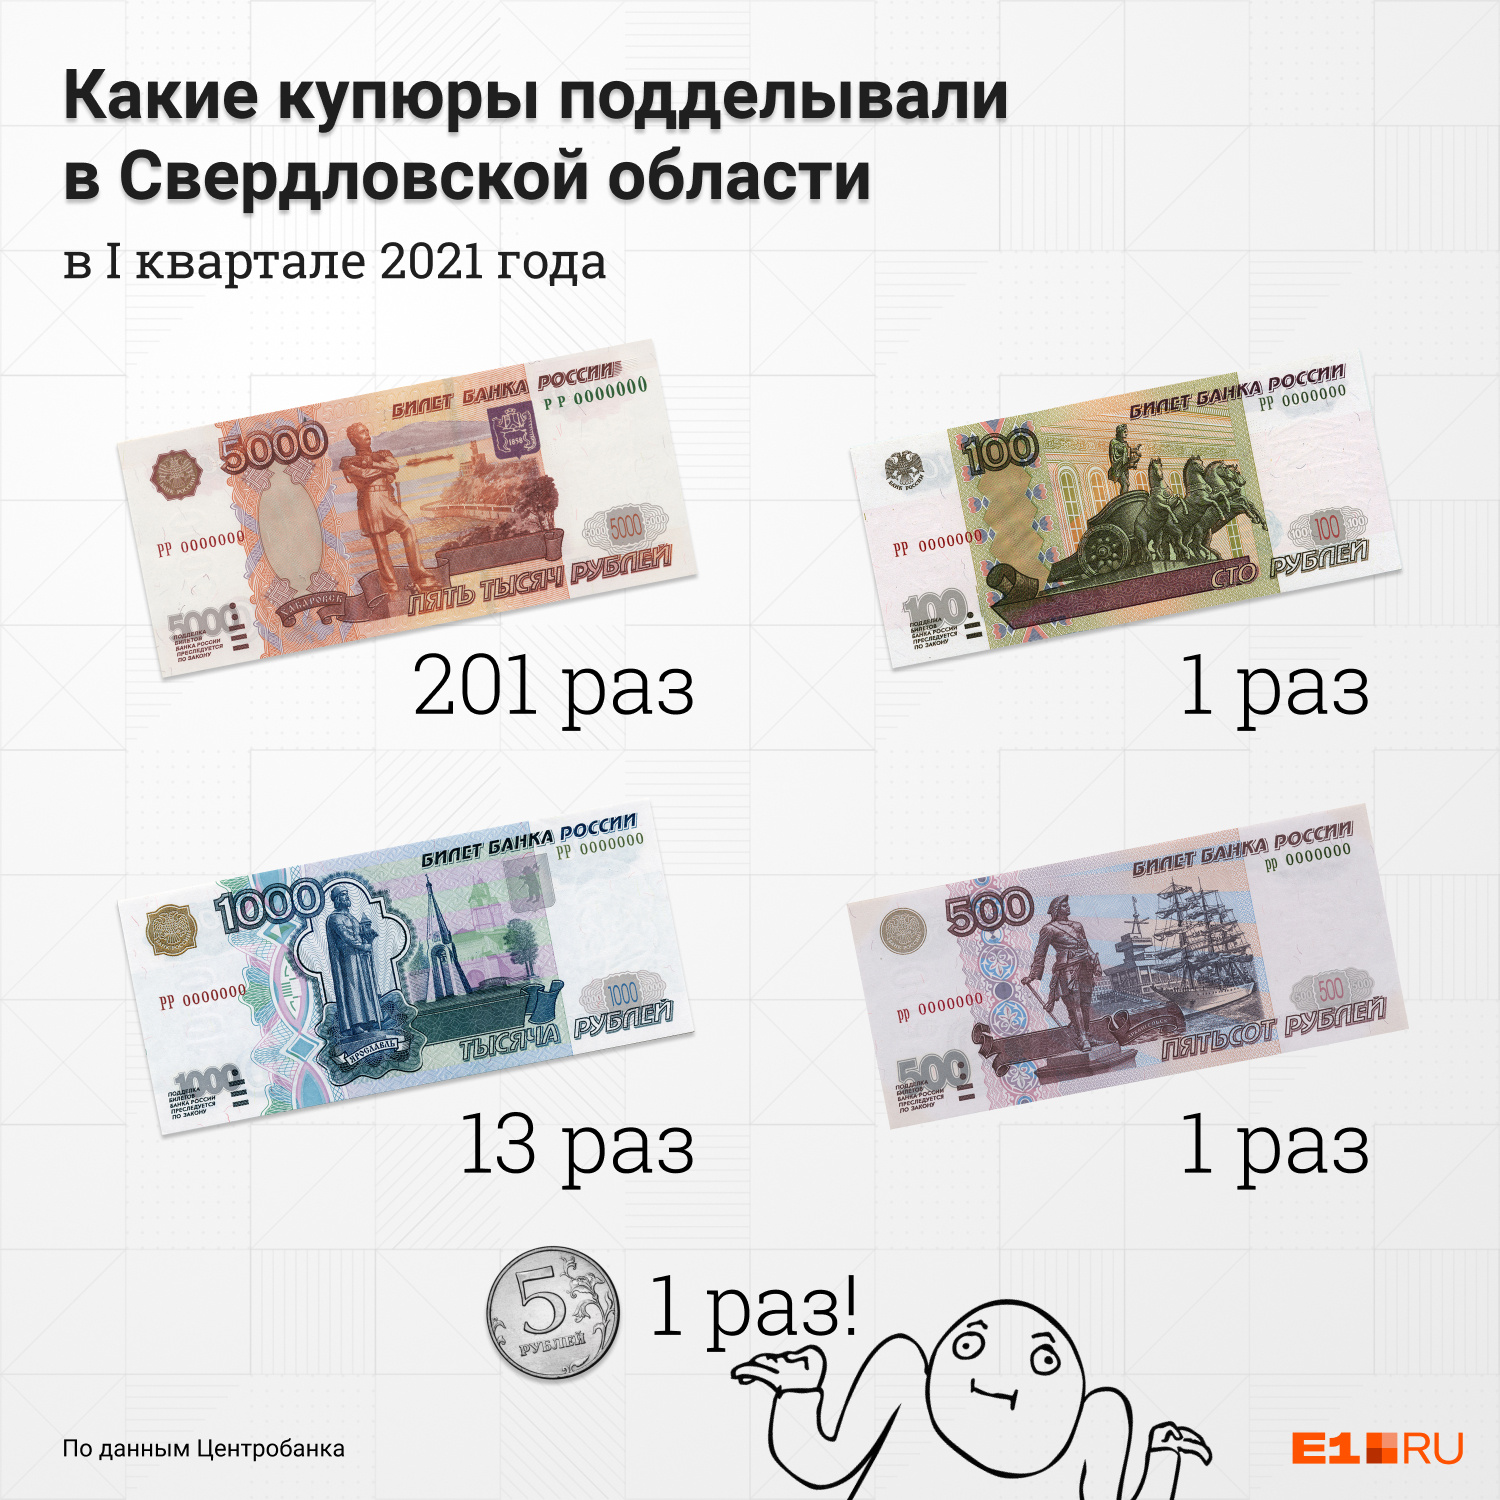 Какие купюры лучше. Какие бывают купюры. Иностранные купюры. Какие банкноты чаще всего подделывают в России?. Какие купюры подделывают чаще.